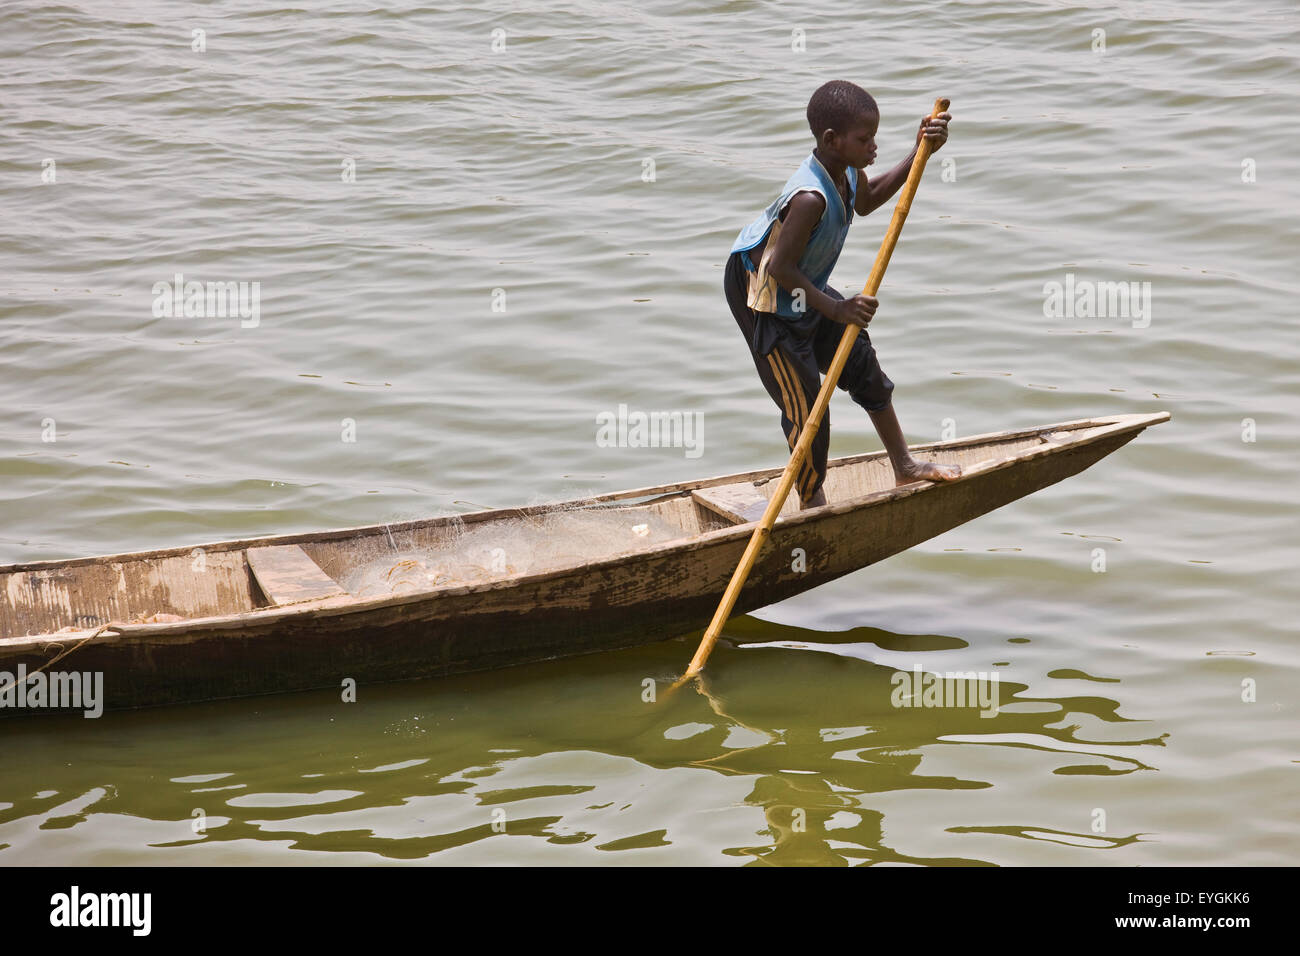 Au Niger, les pêcheurs Hausa garçon descendant sur le fleuve Niger en pirogue traditionnelle ; Niamey Banque D'Images